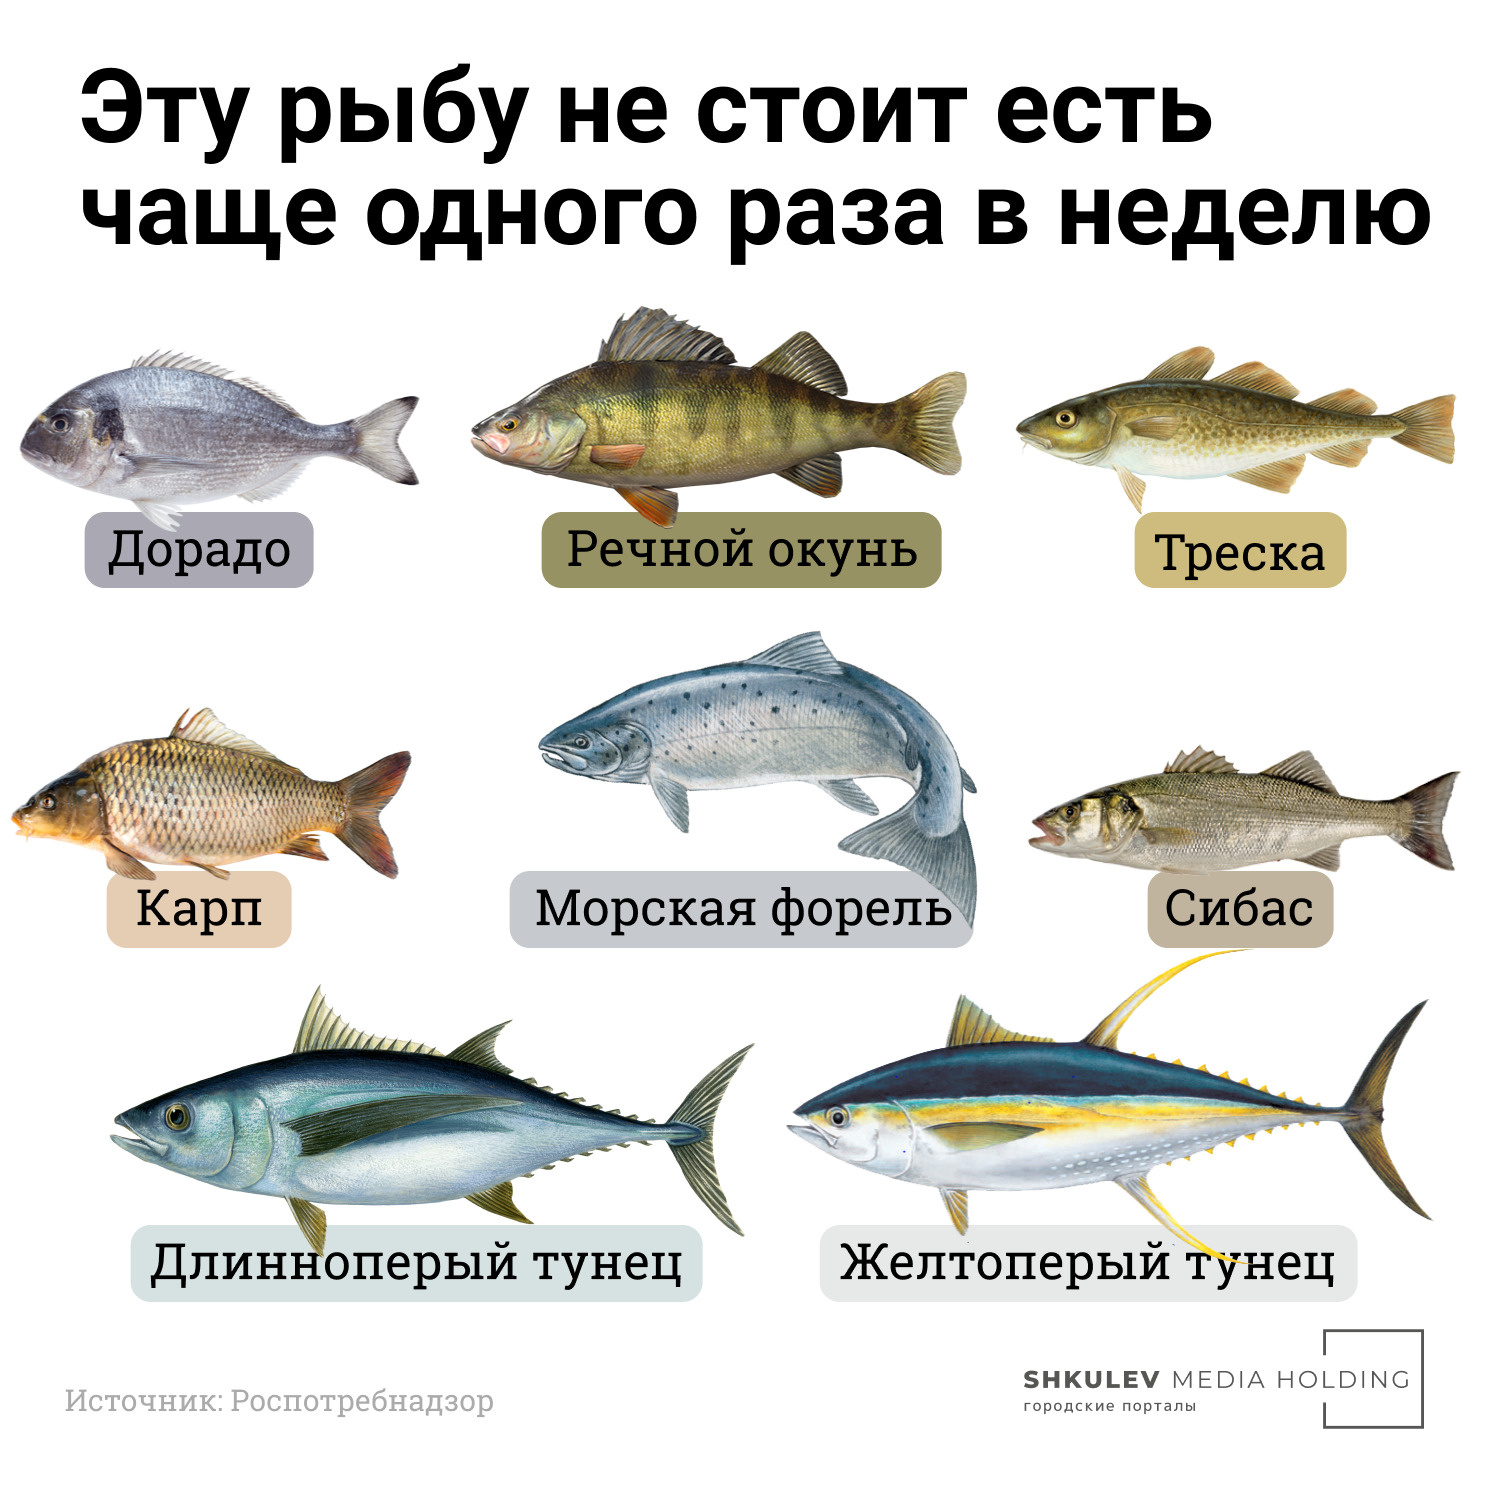 Как определить рыбу по фото